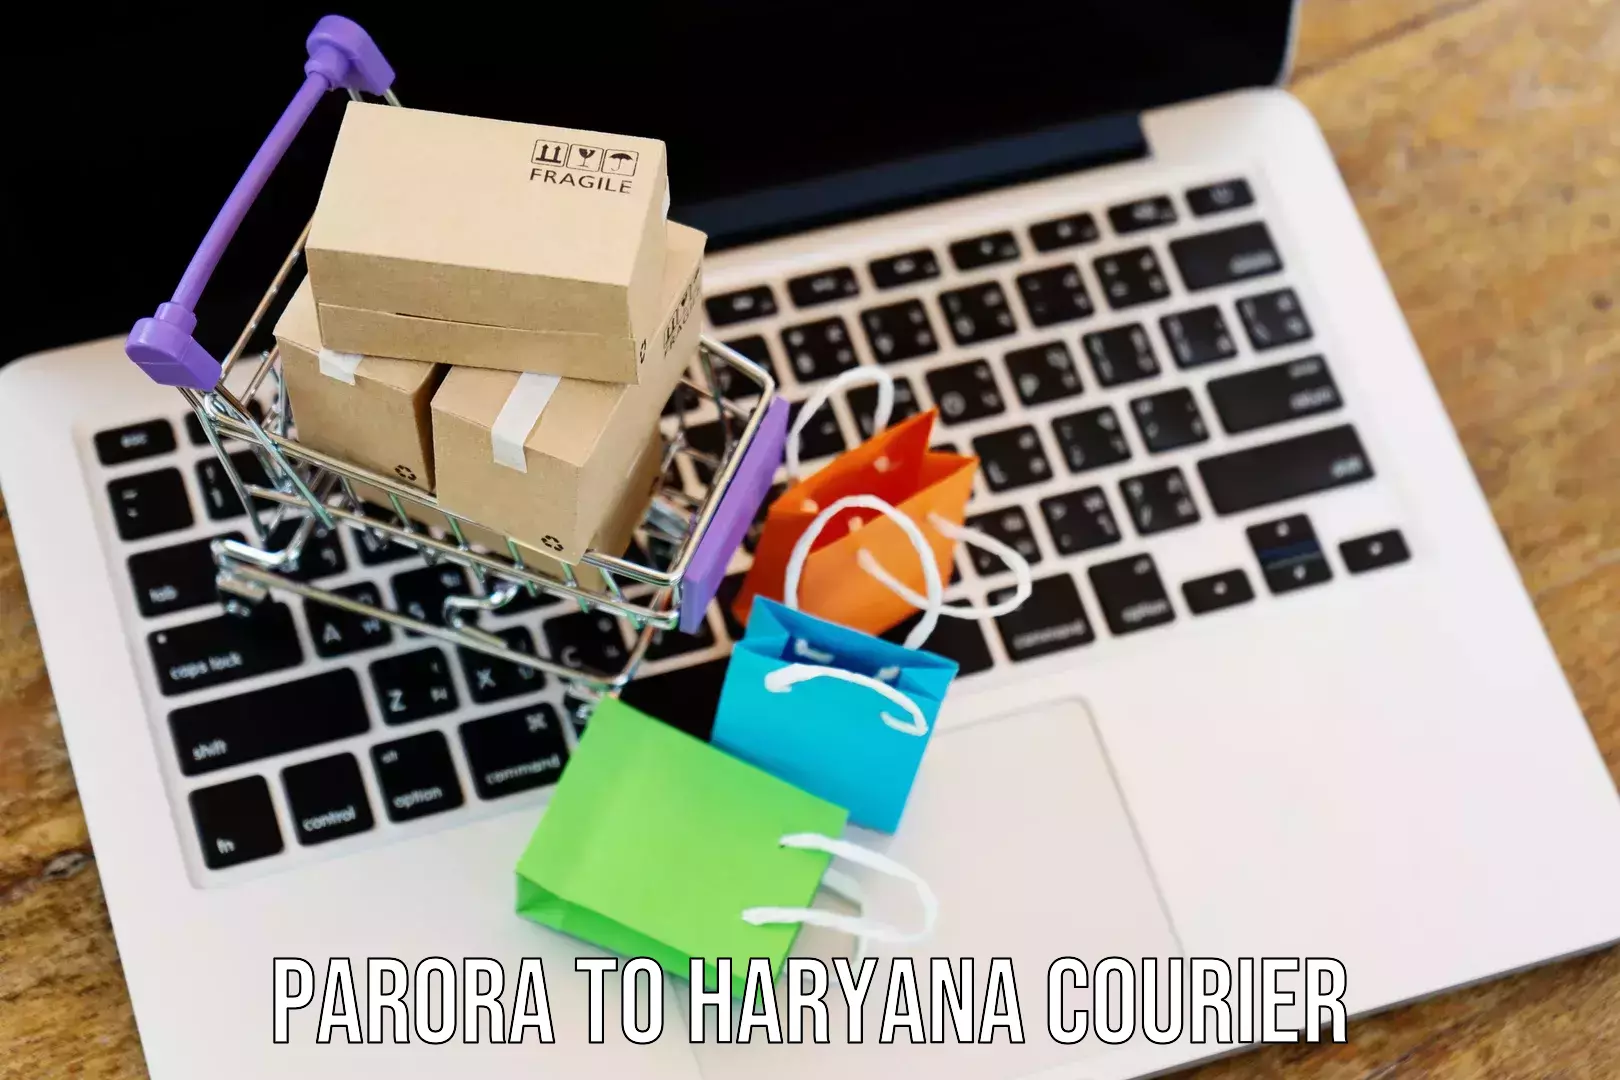 Full-service courier options Parora to Kurukshetra